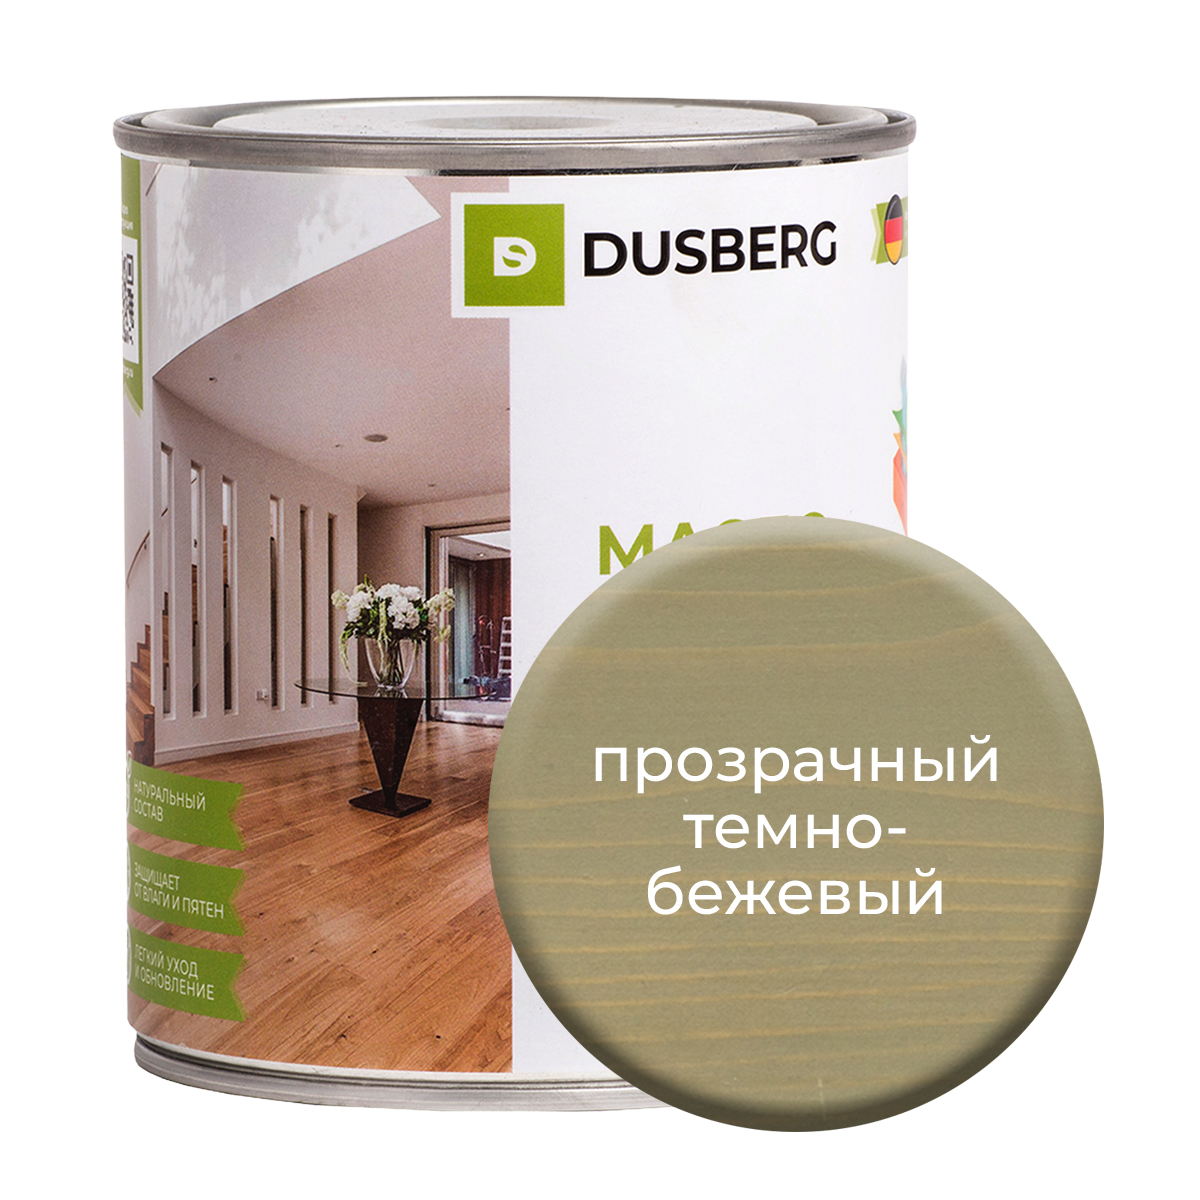 Масло Dusberg с твердым воском на бесцветной основе, 750 мл Прозрачный темно-бежевый